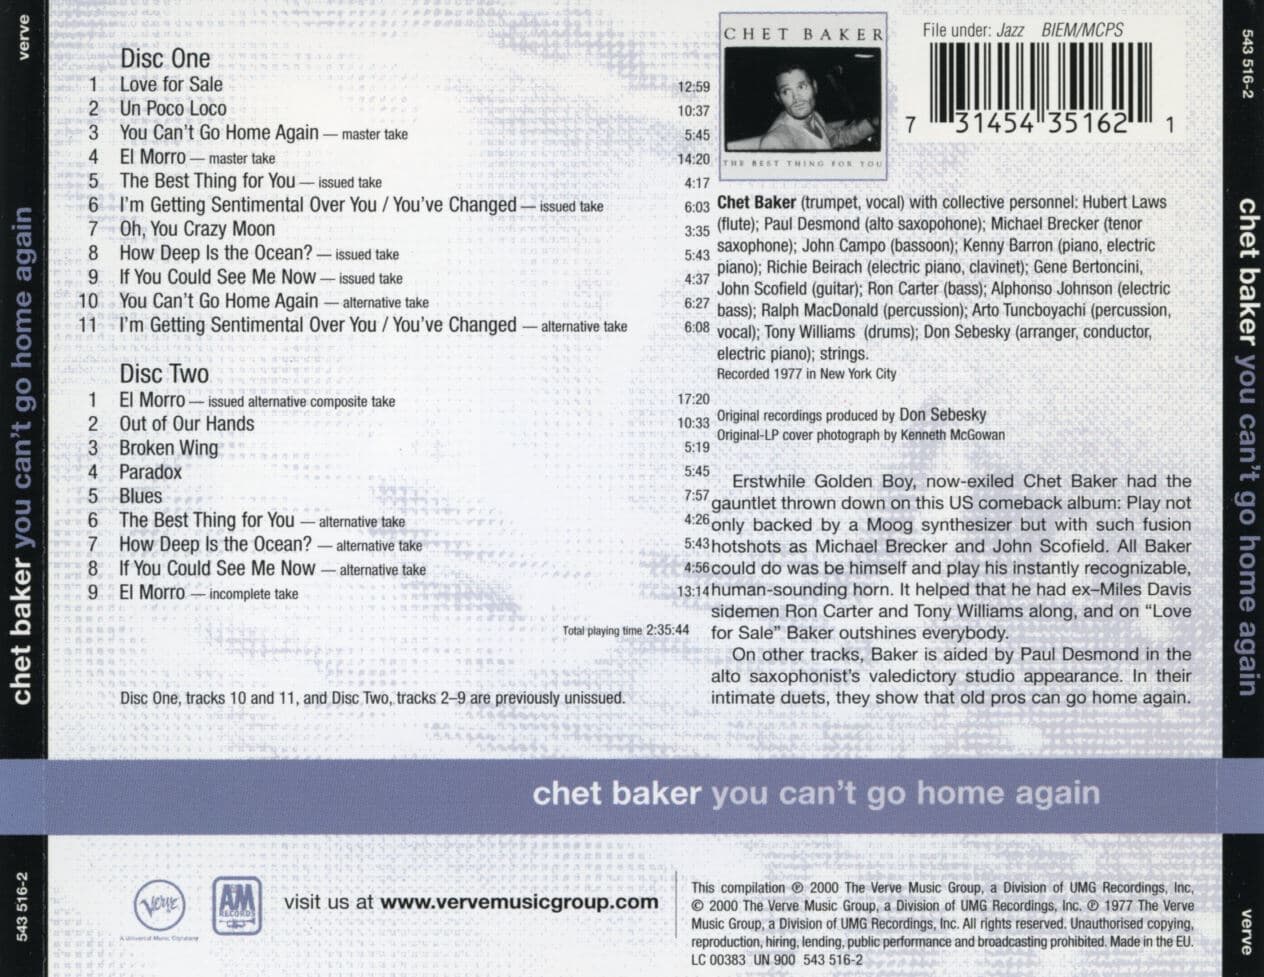 쳇 베이커 - Chet Baker - You Can't Go Home Again 2Cds [E.U발매]